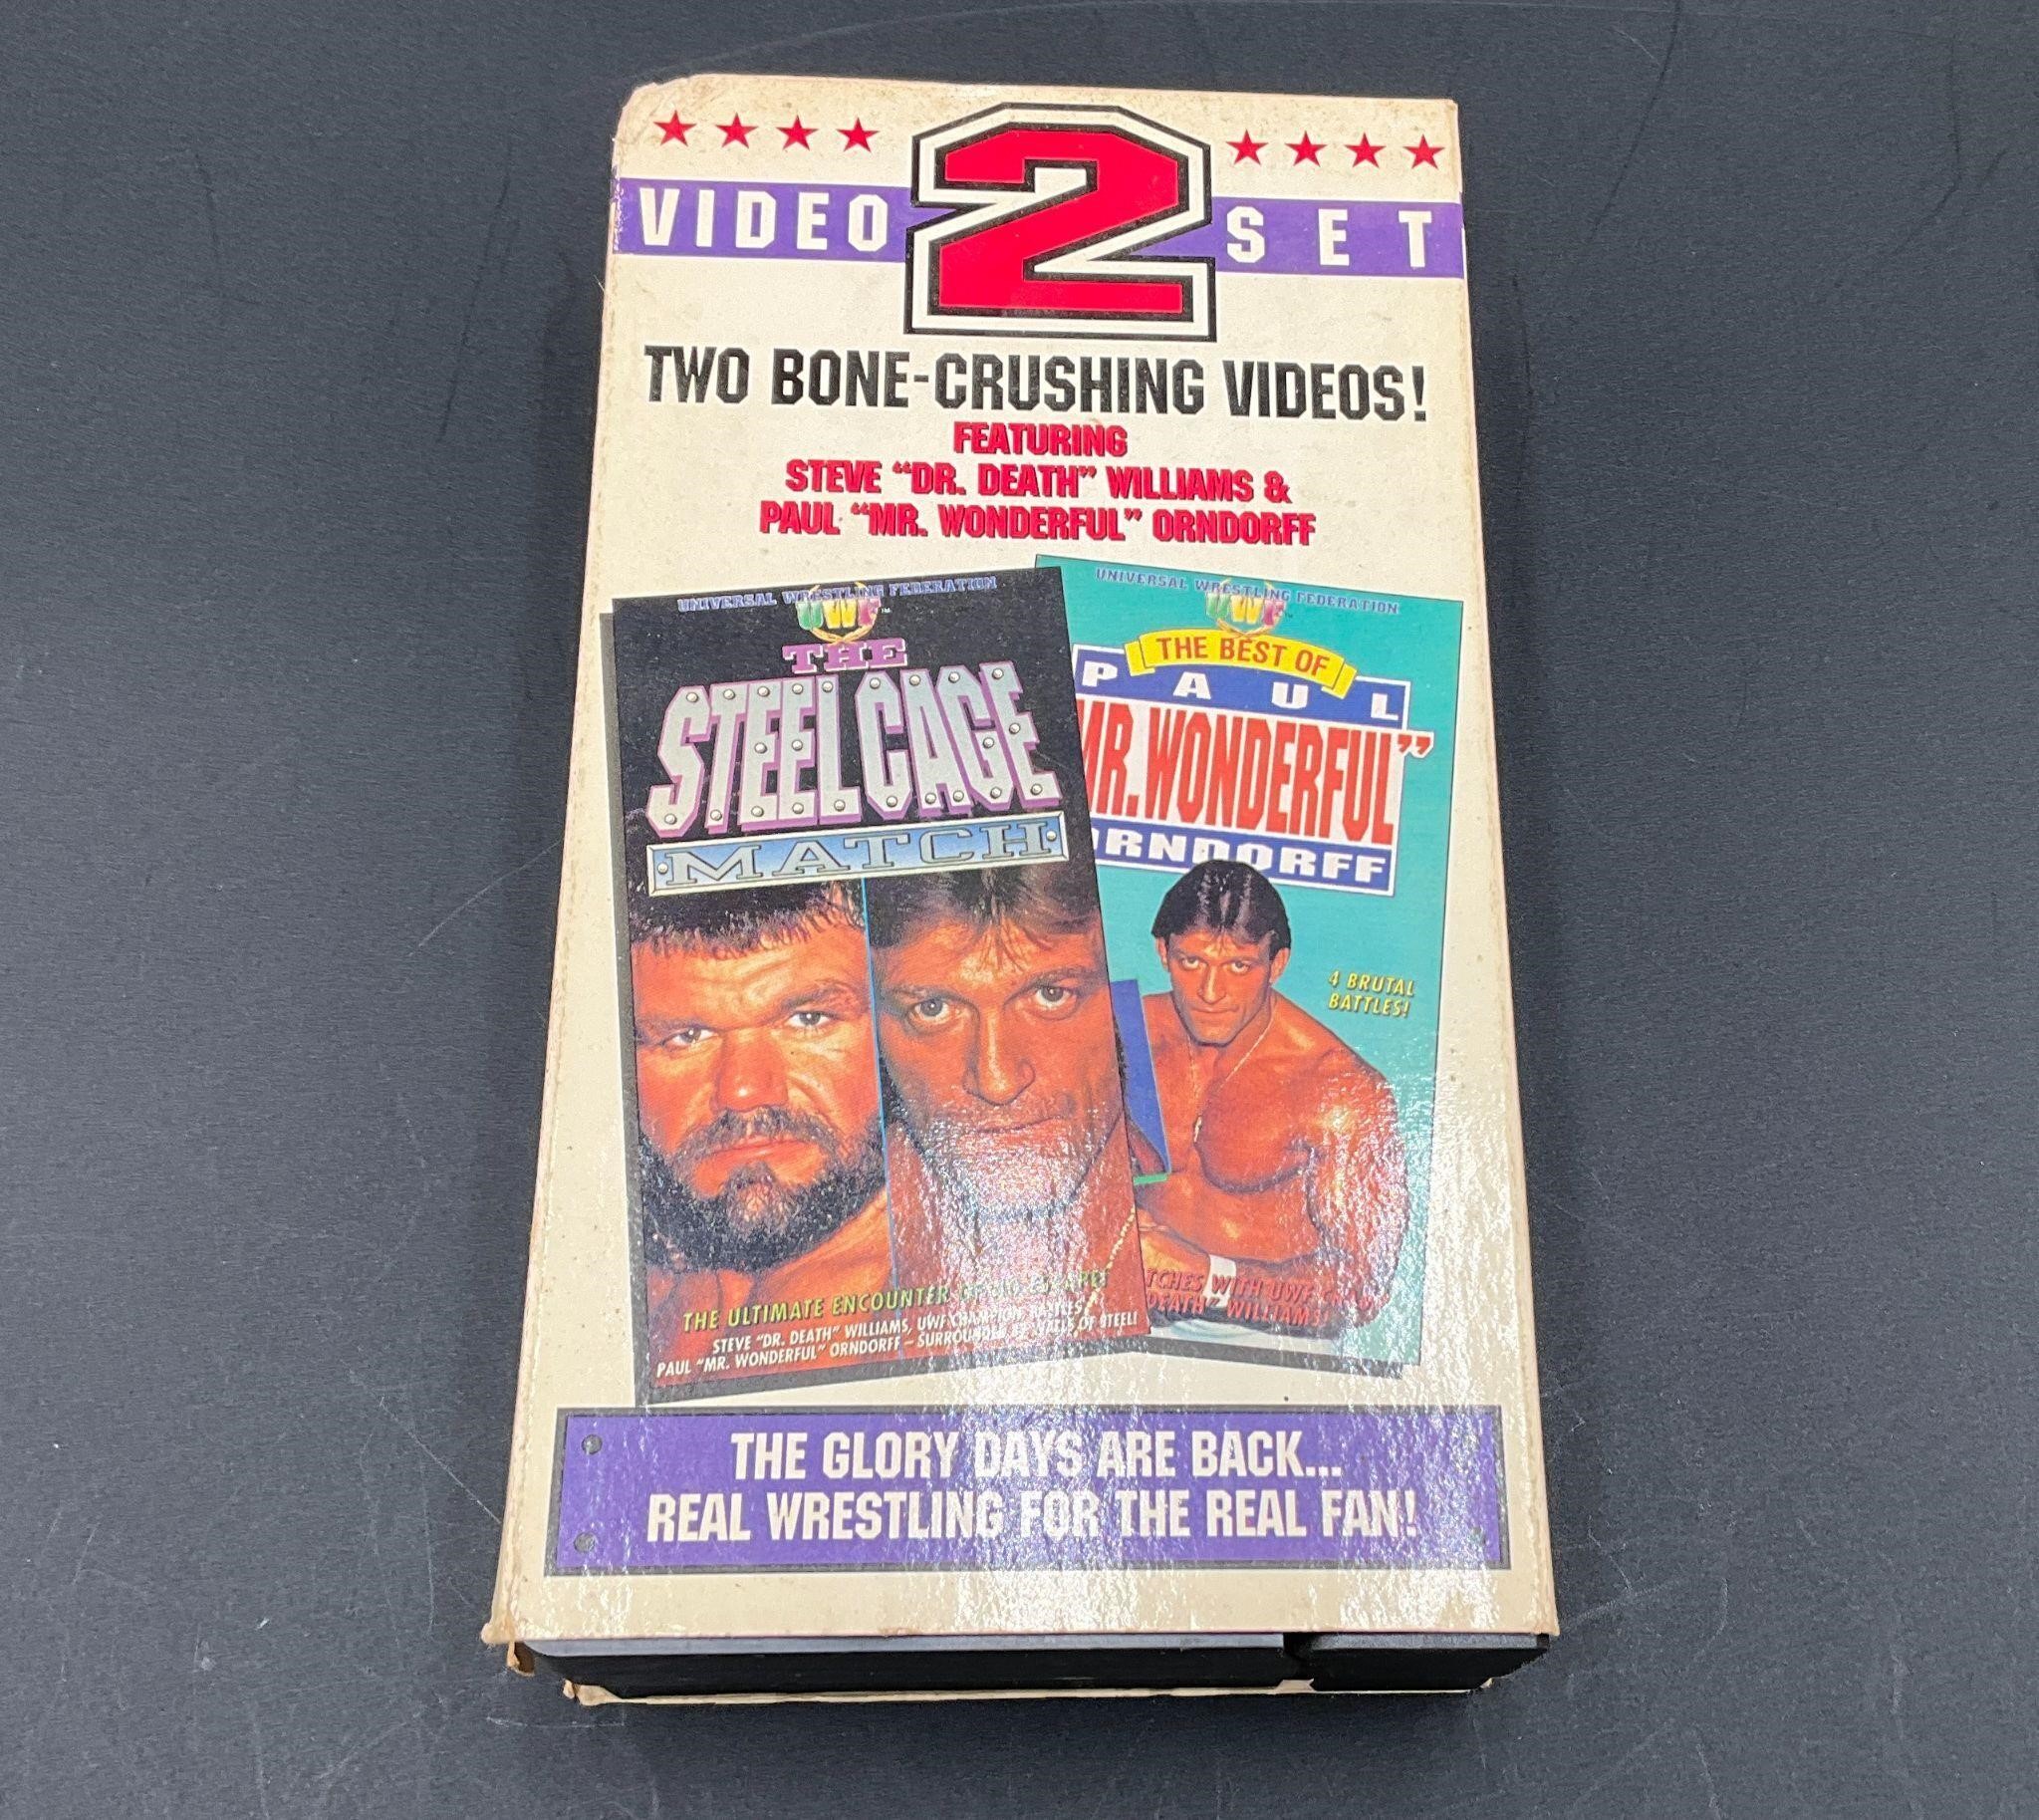 Steel Cage & Mr Wonderful 1992 UWF 2 VHS Tape Set